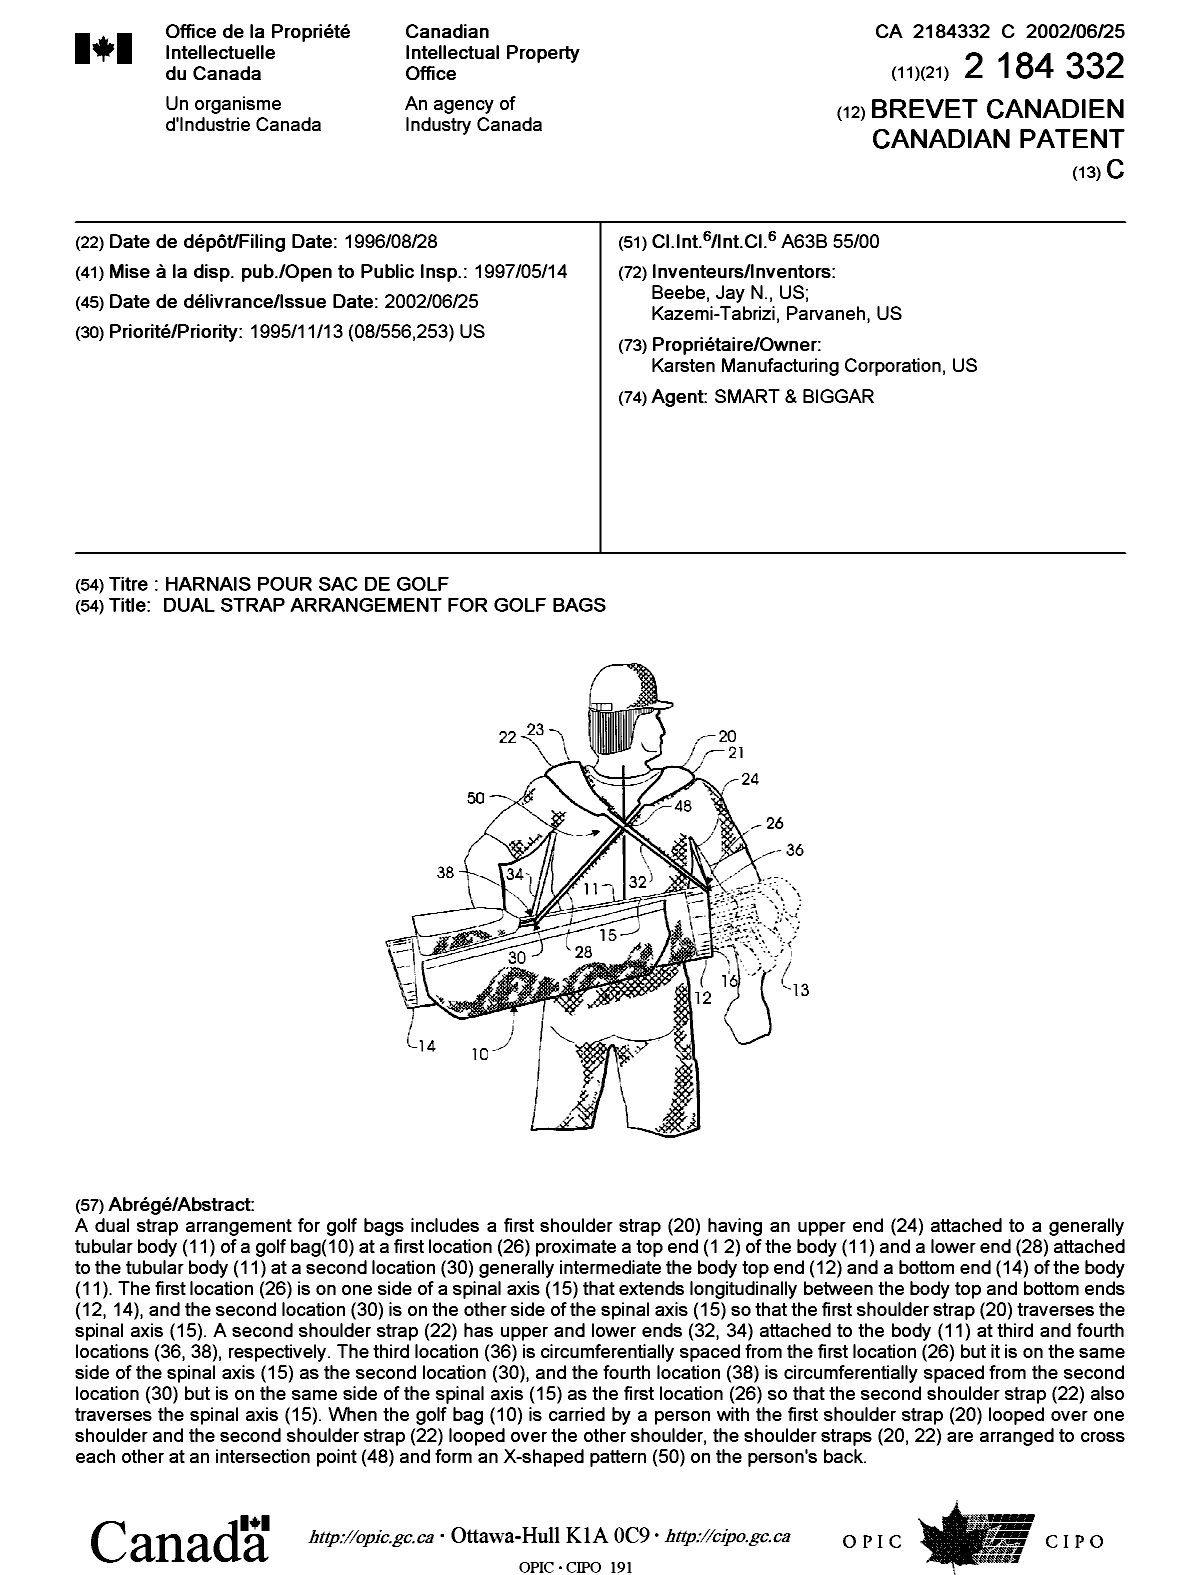 Document de brevet canadien 2184332. Page couverture 20020523. Image 1 de 1